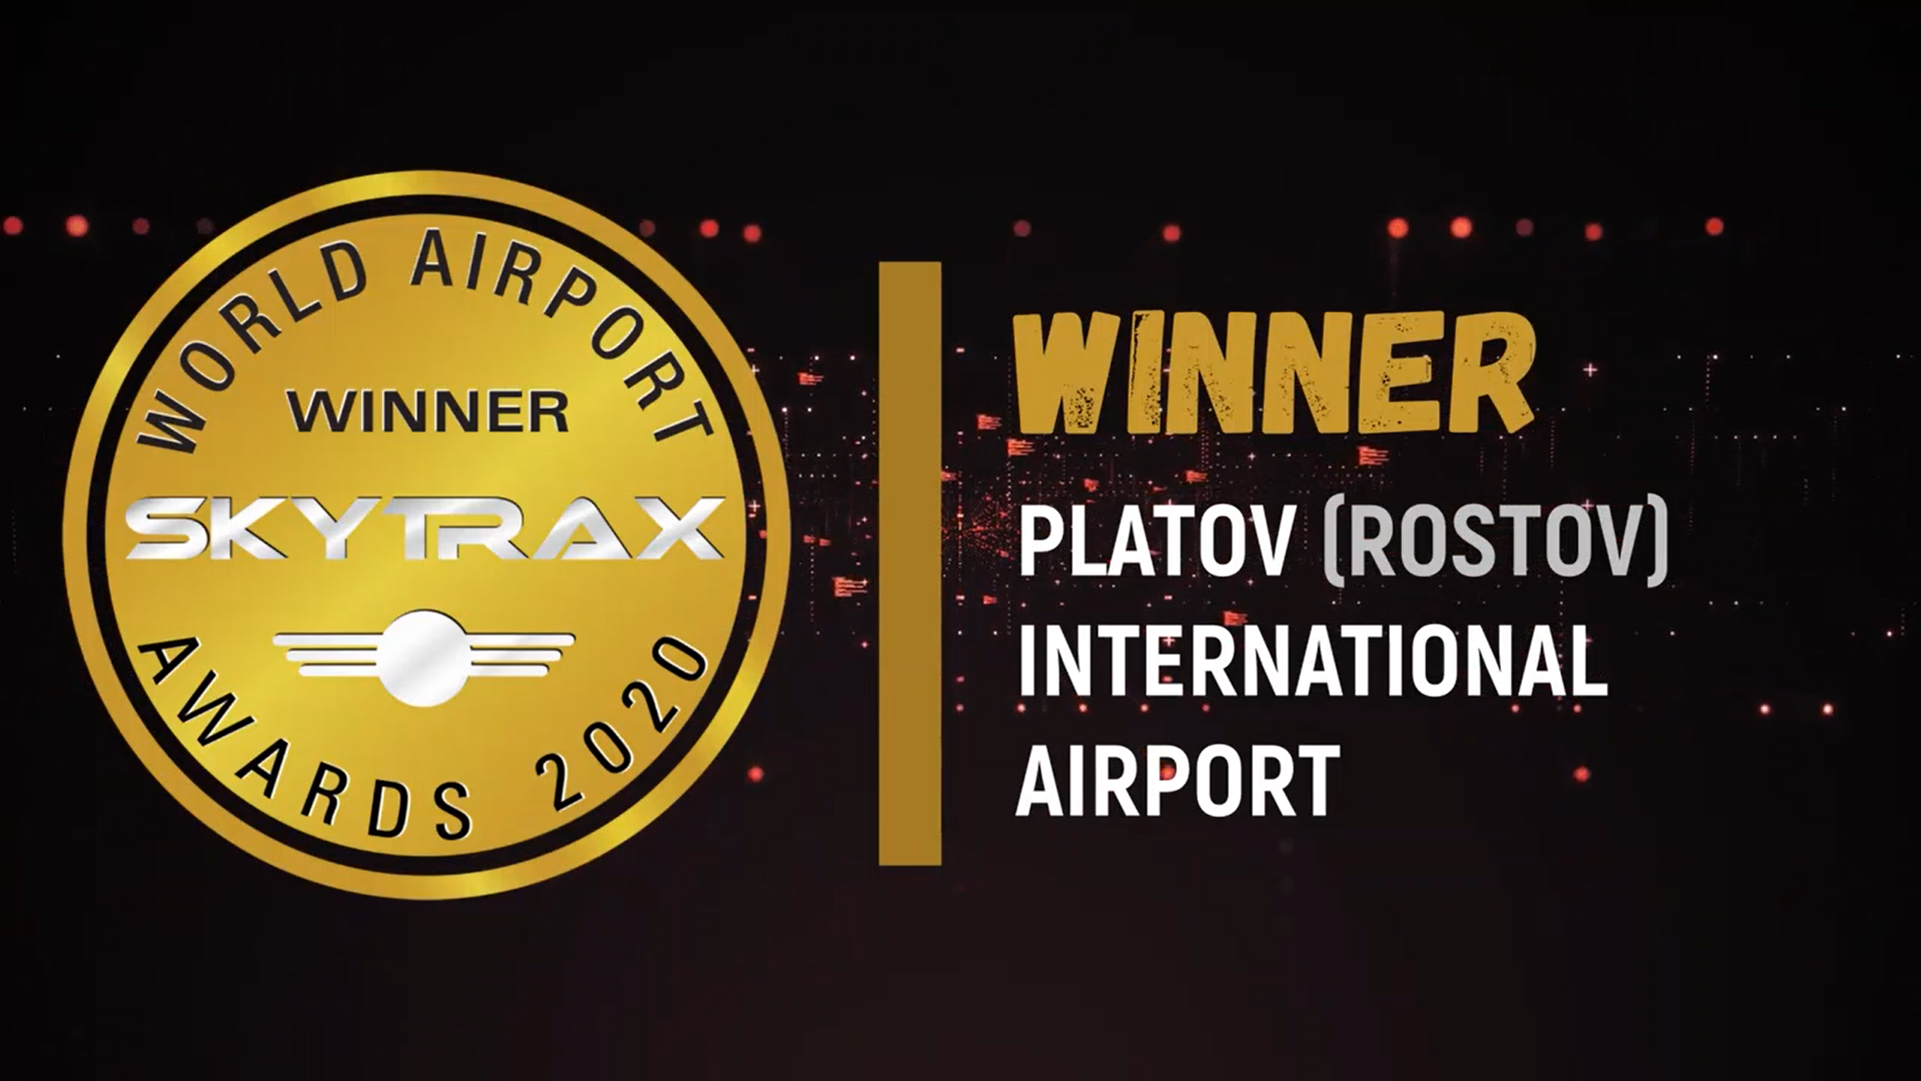 Платов признан лучшим региональным аэропортом  в России и СНГ по версии Skytrax